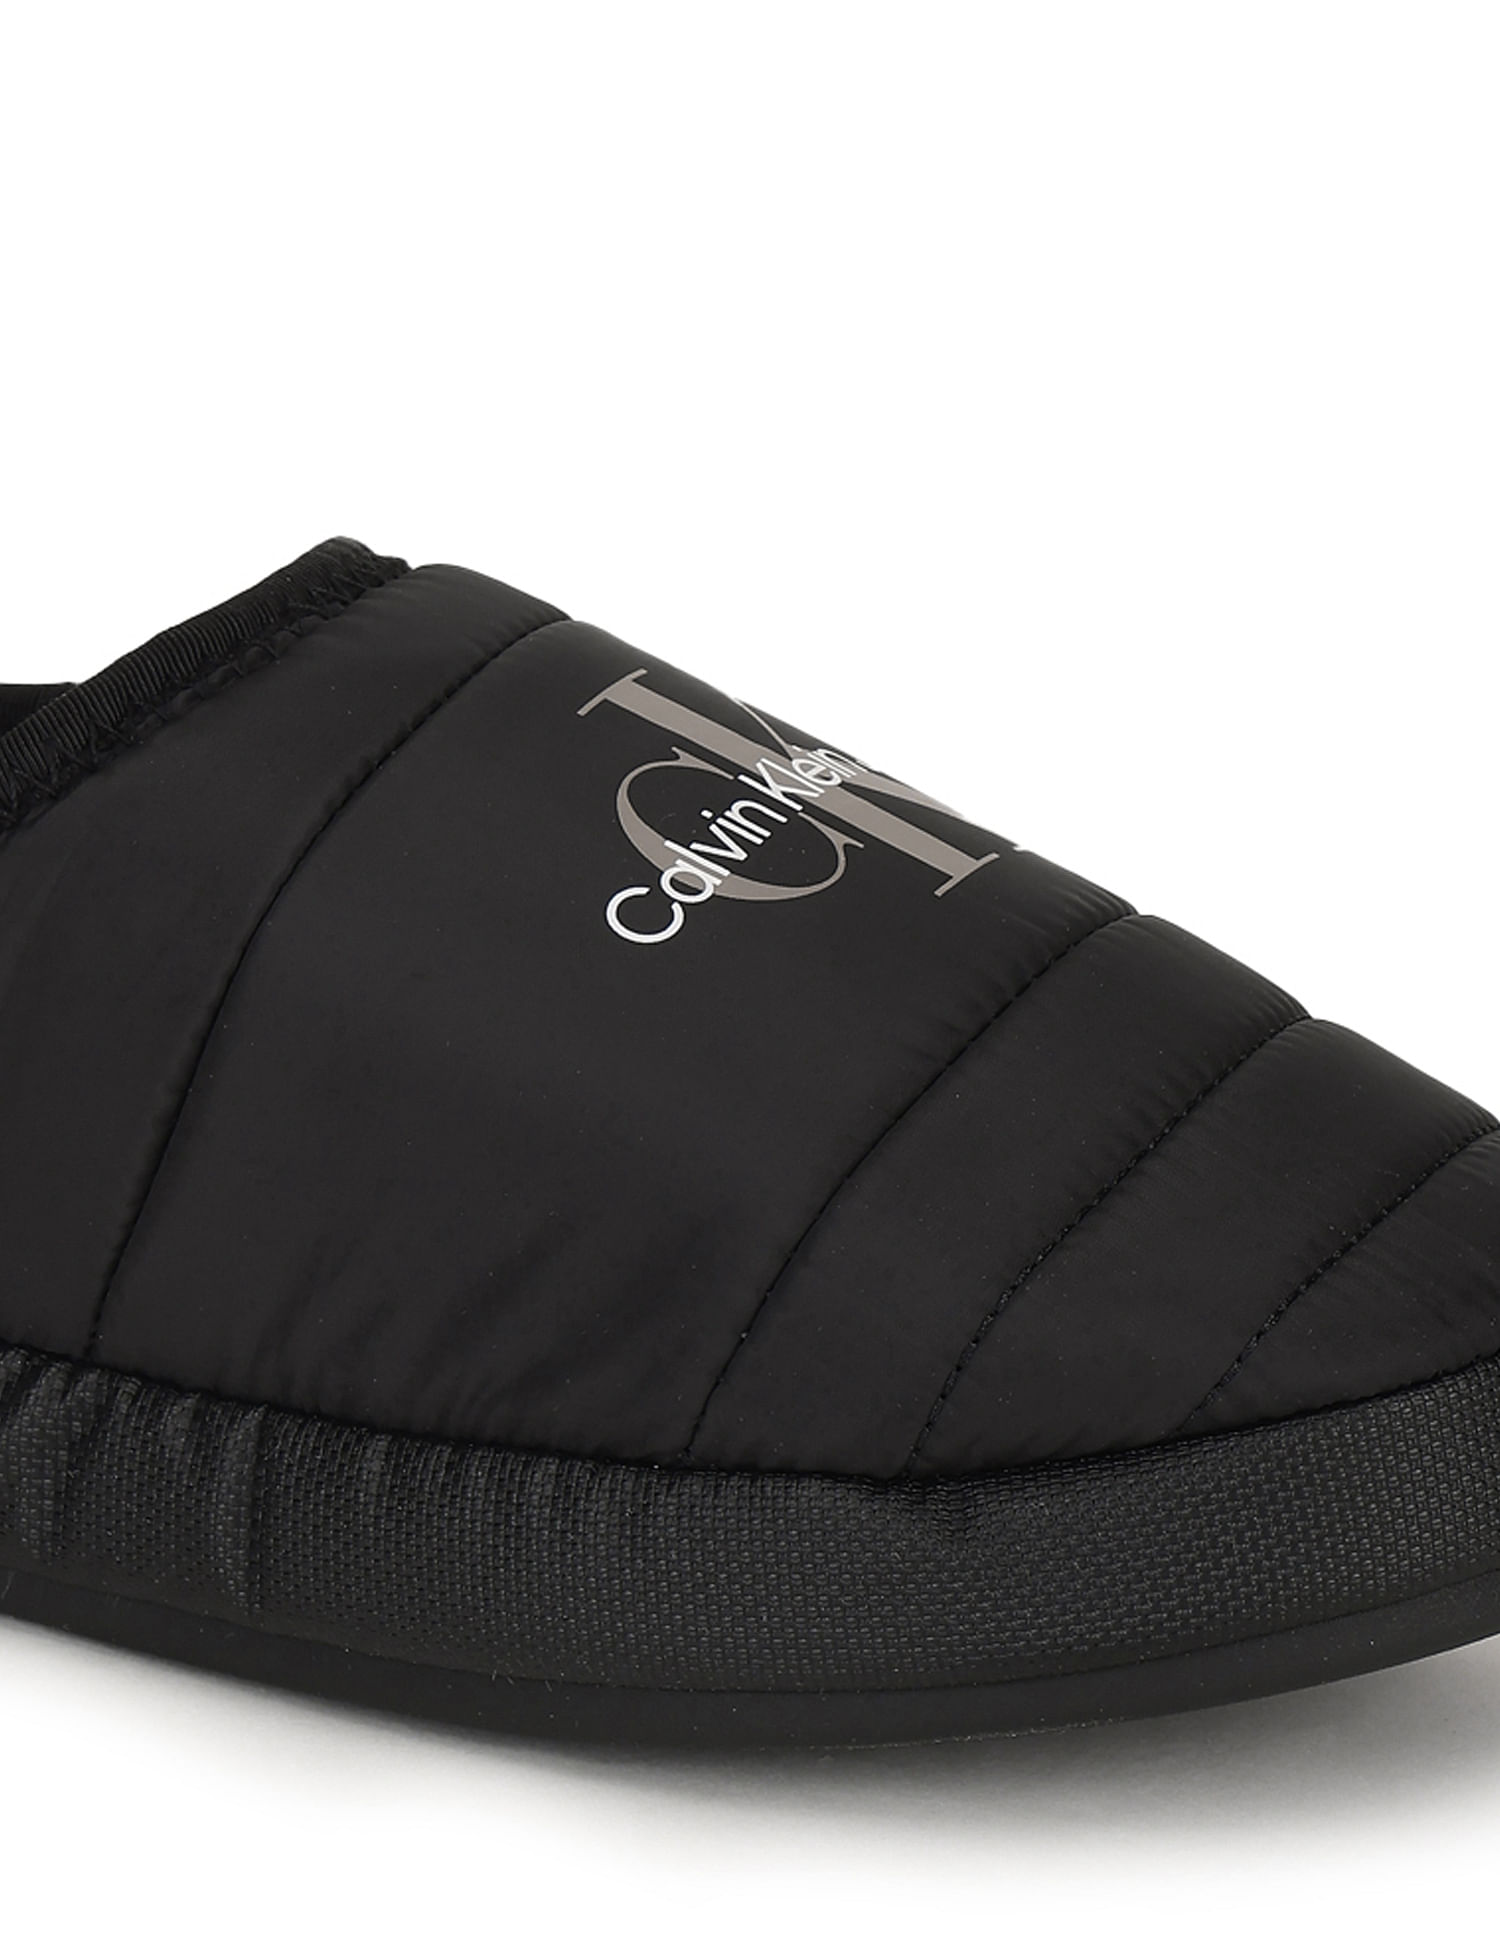 Calvin Klein HOME SHOE SLIPPER Men Slippers Shoes in Black